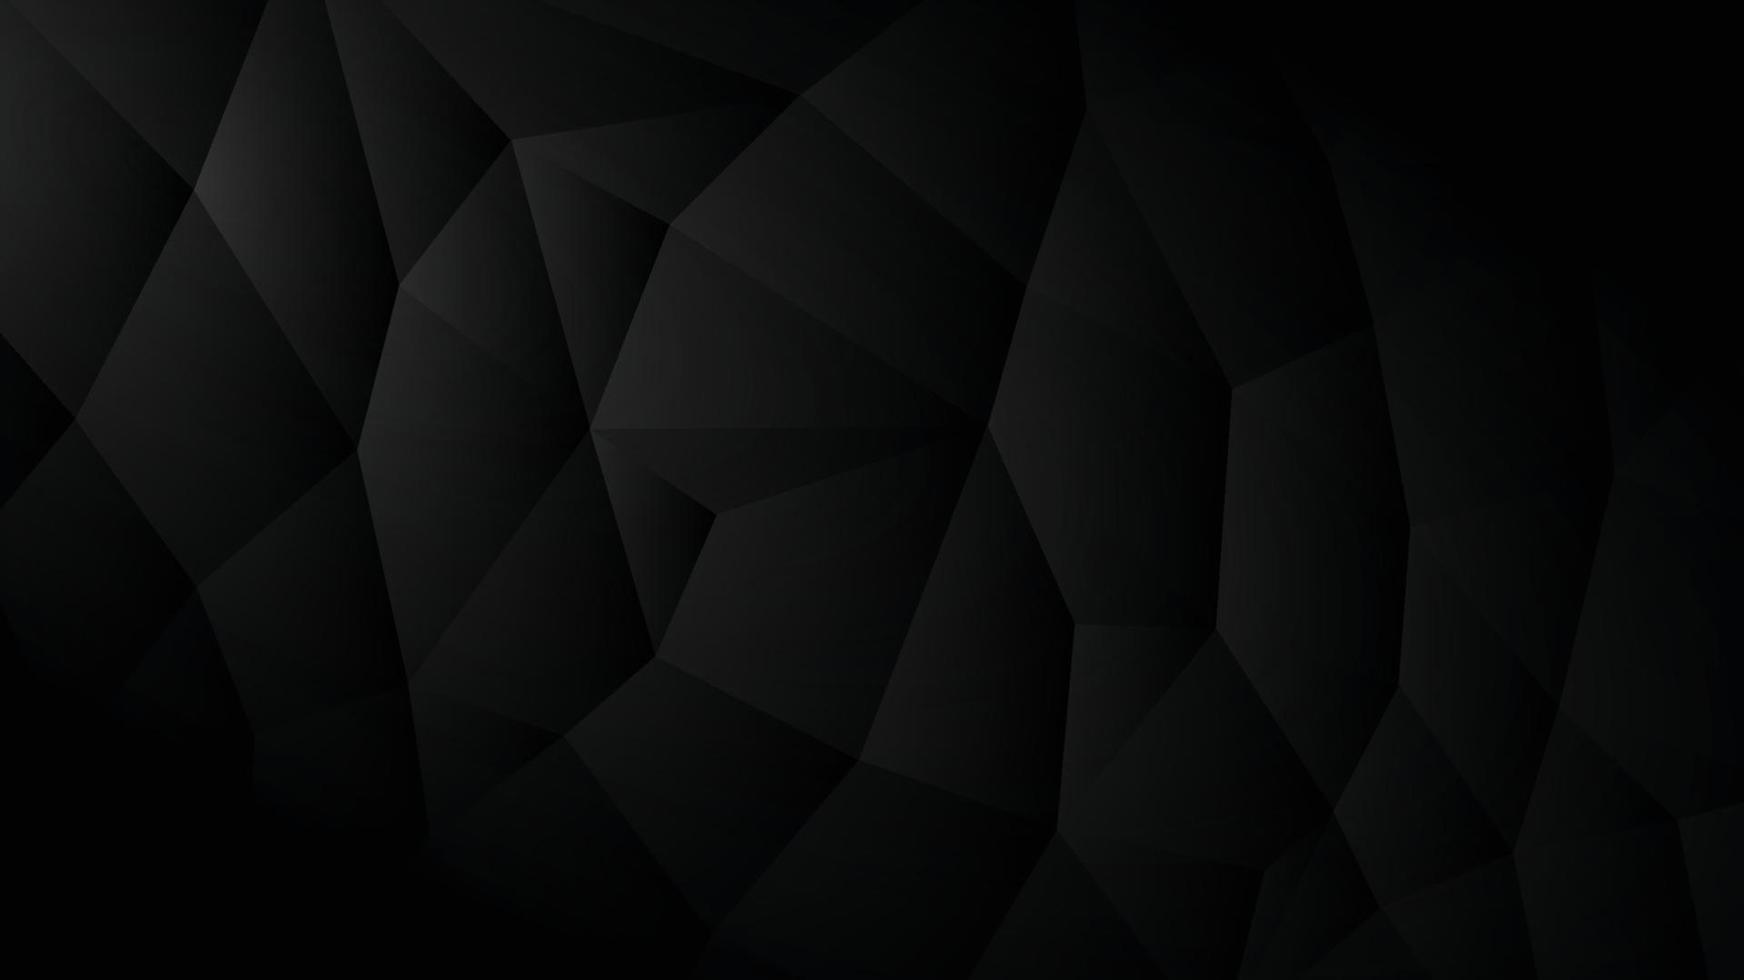 Hintergrundbild mit Oberfläche von Dreiecken in einem dunklen Ton verbunden. vektor